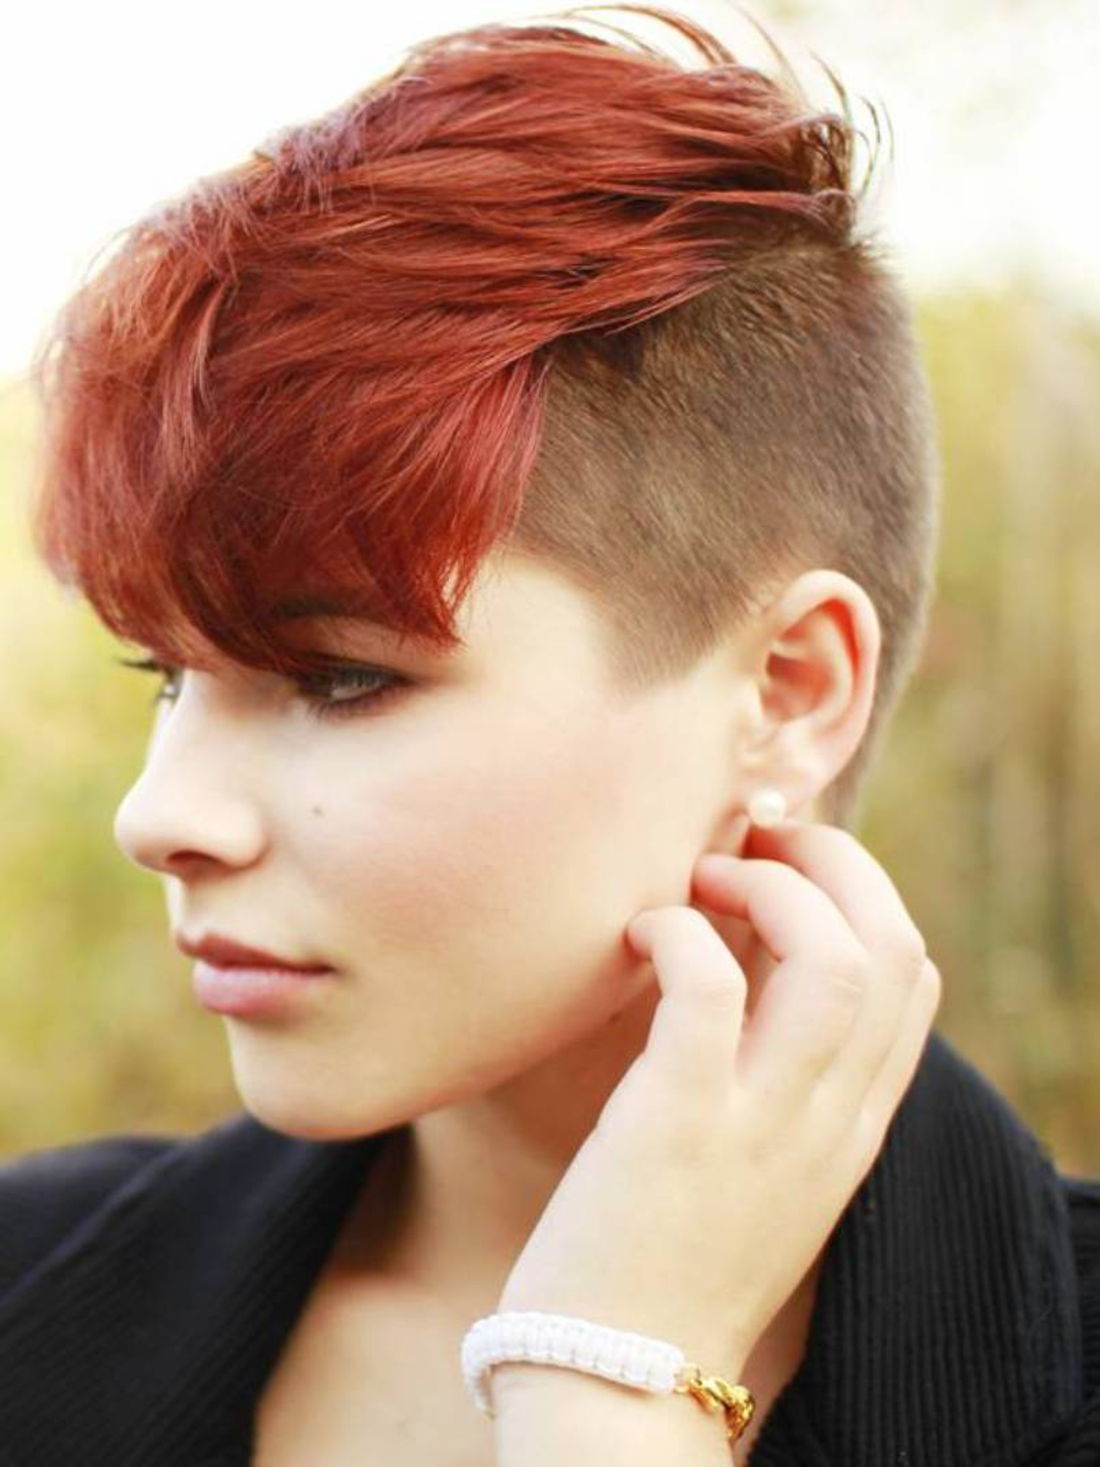 Penteados Undercut mulheres curto cabelo na cor vermelha marrom natural cabelo cor frisado pulseira